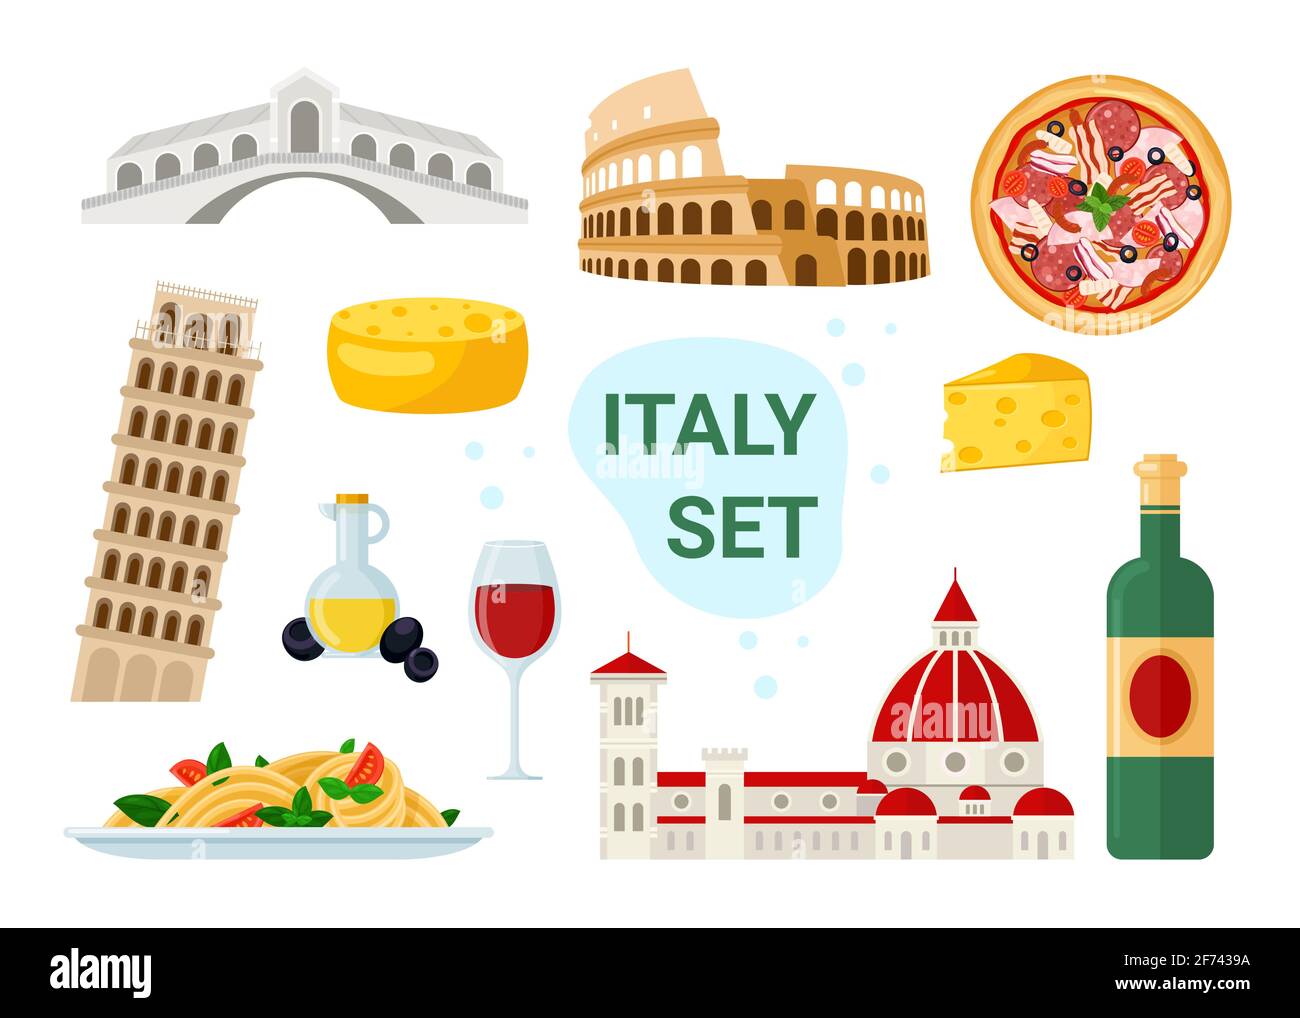 Le tourisme italien est établi avec un célèbre menu de nourriture et de boissons italiennes, un monument de voyage ancien Illustration de Vecteur